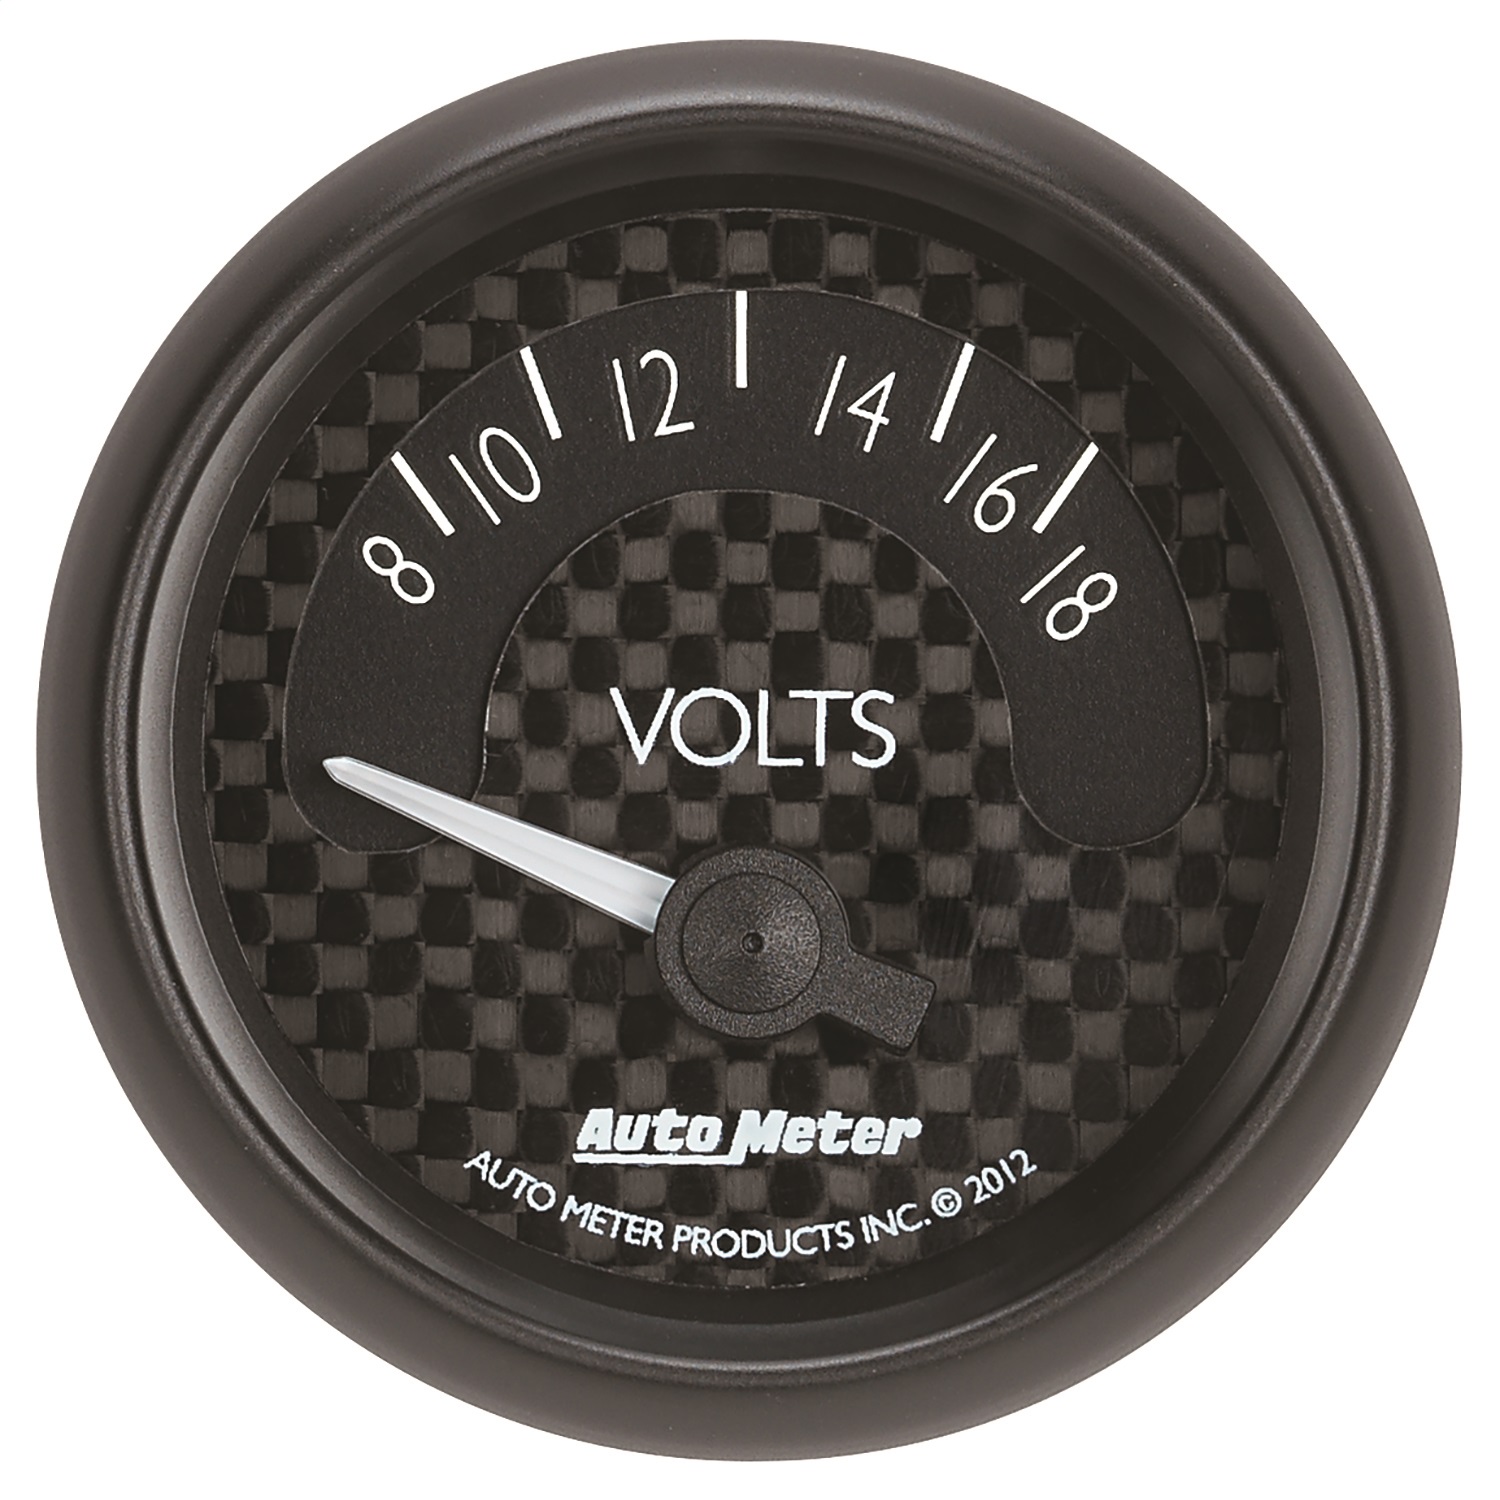 Auto Meter Auto Meter 8092 GT Series; Electric Voltmeter Gauge